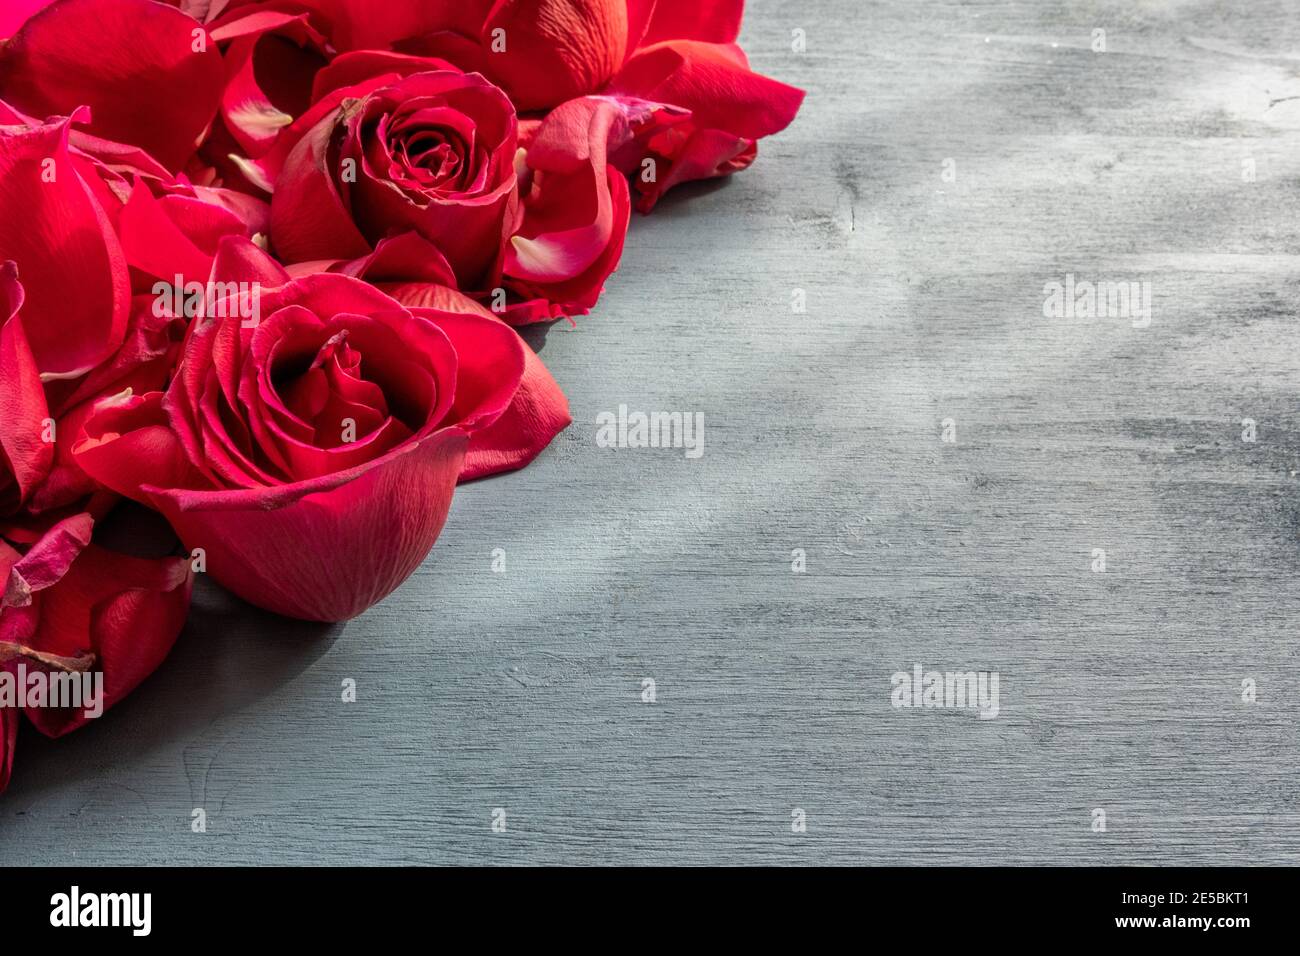 Concept de célébration et d'événement spécial : vue d'en haut sur les pétales de rose ouverts rouges disposés sur le cadre de gauche. Fond gris texturé en bois naturel Banque D'Images